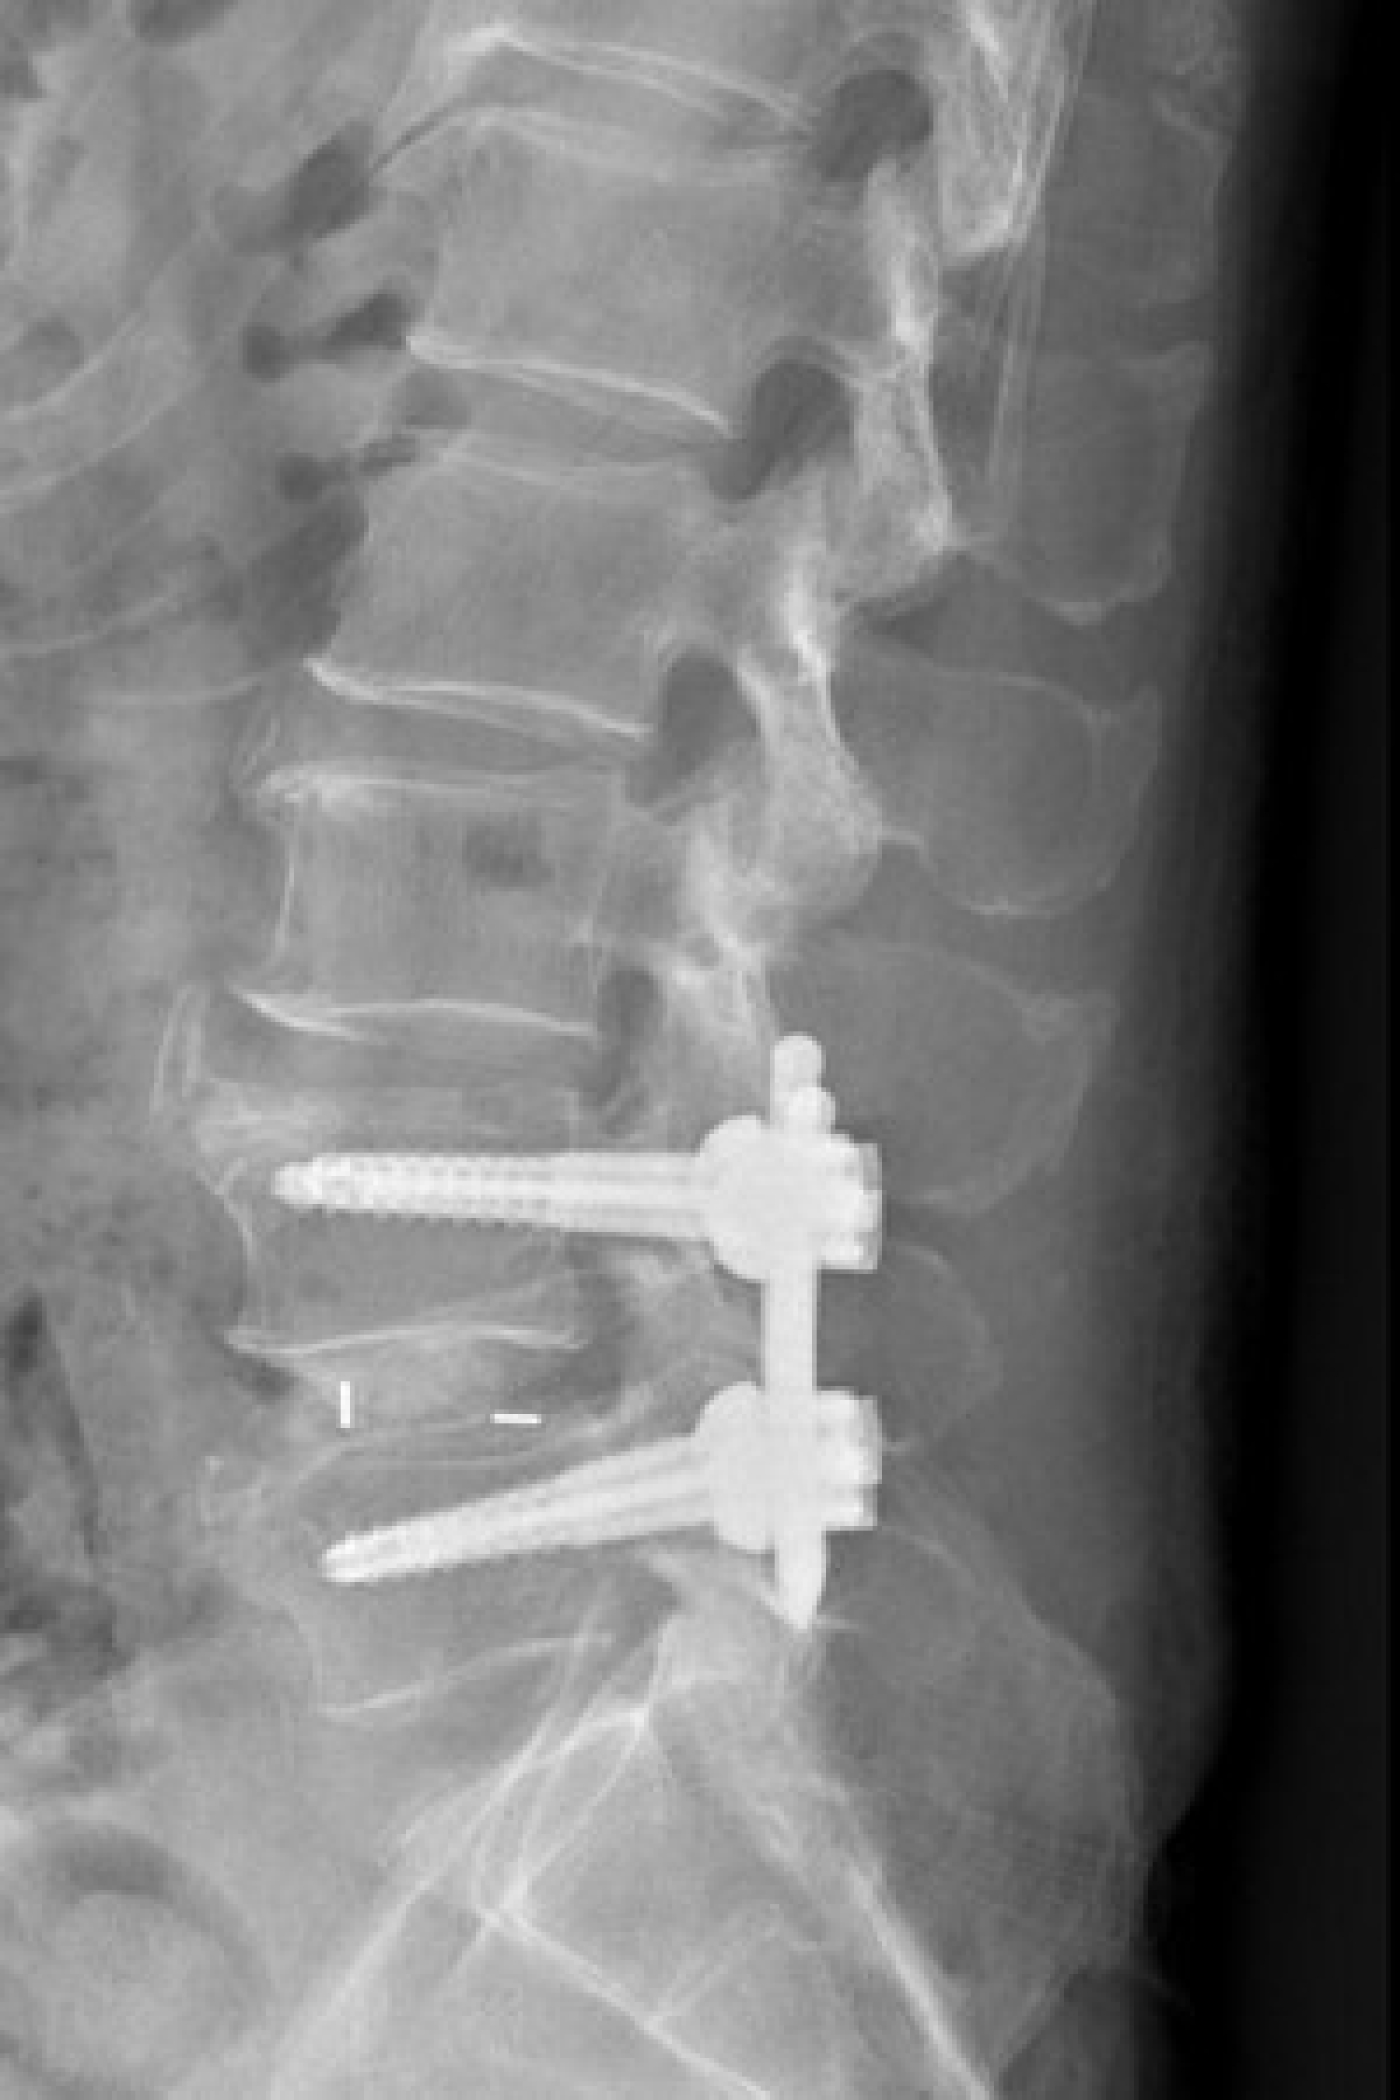 微創手術治療腰椎滑脫　瓦解下背痛讓病人充滿驚喜